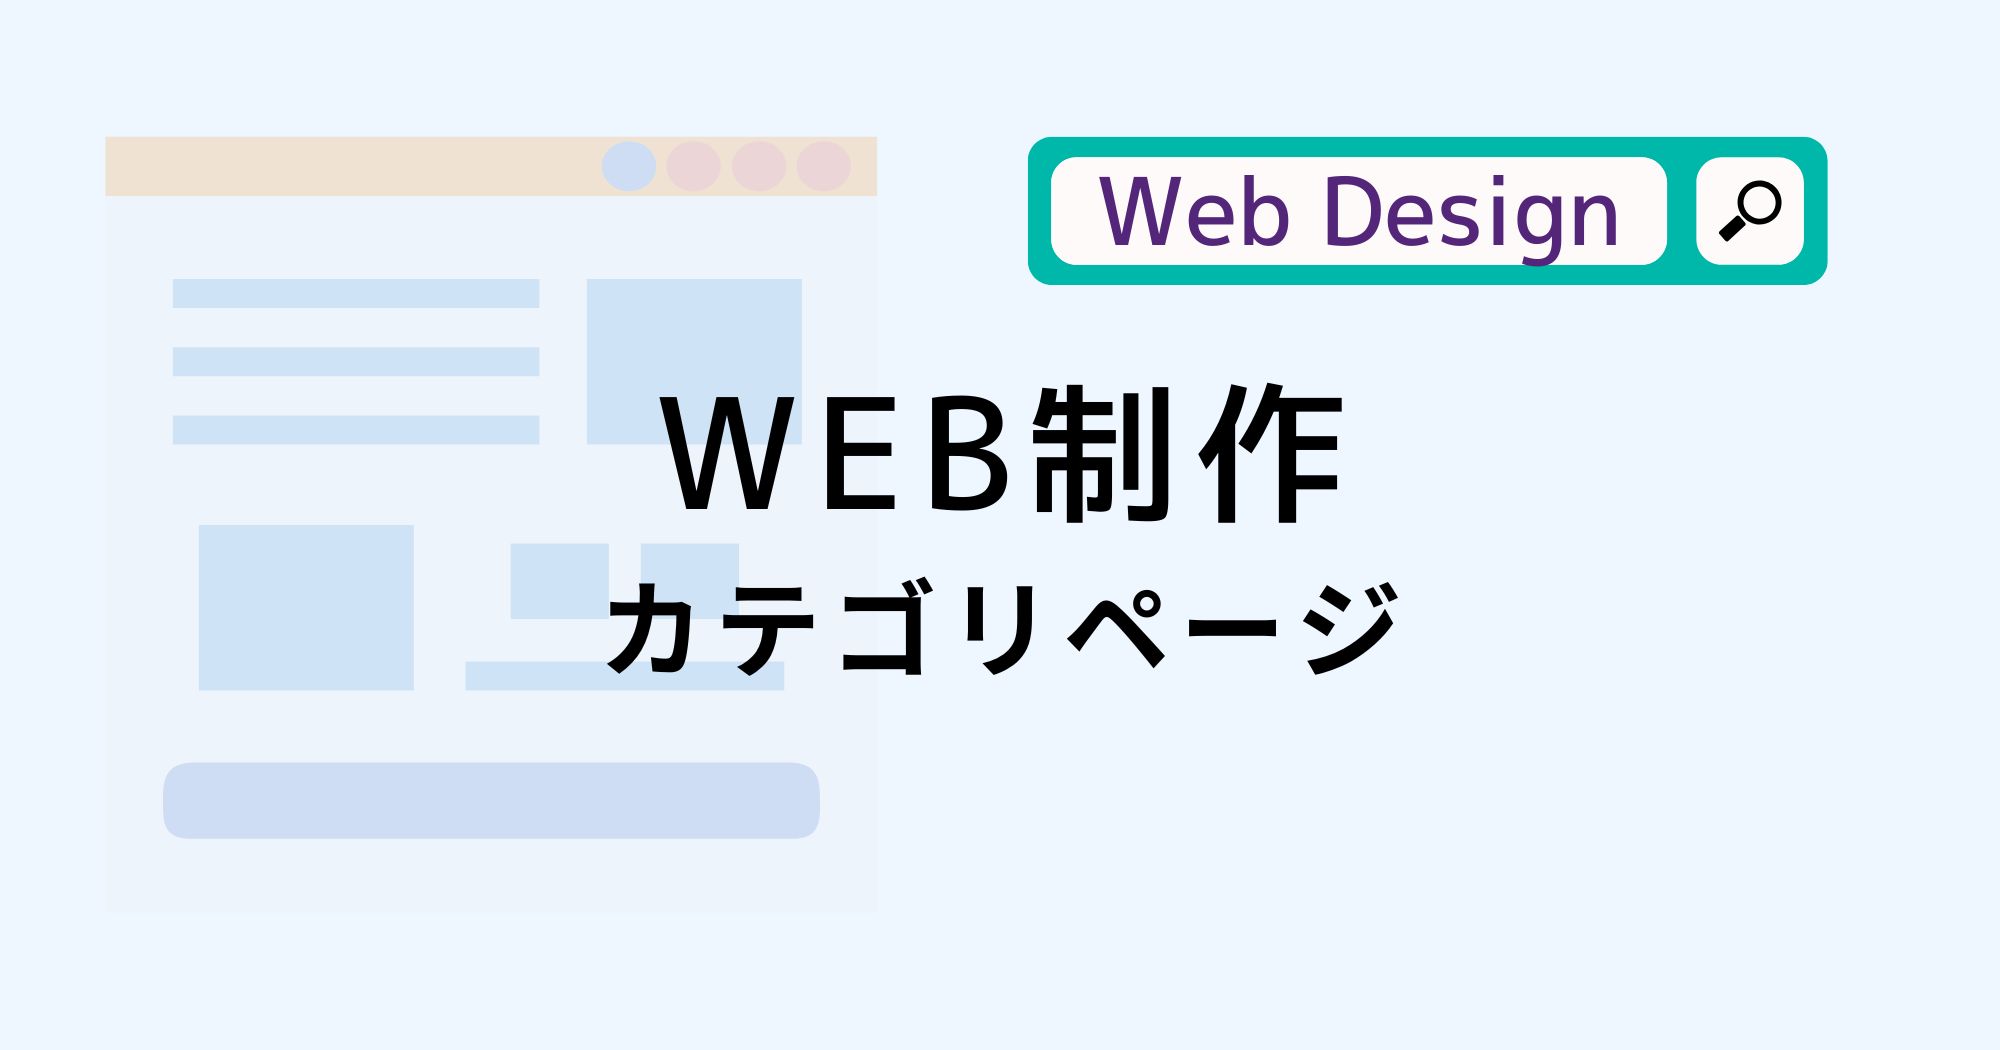 WEB制作に関するカテゴリページ